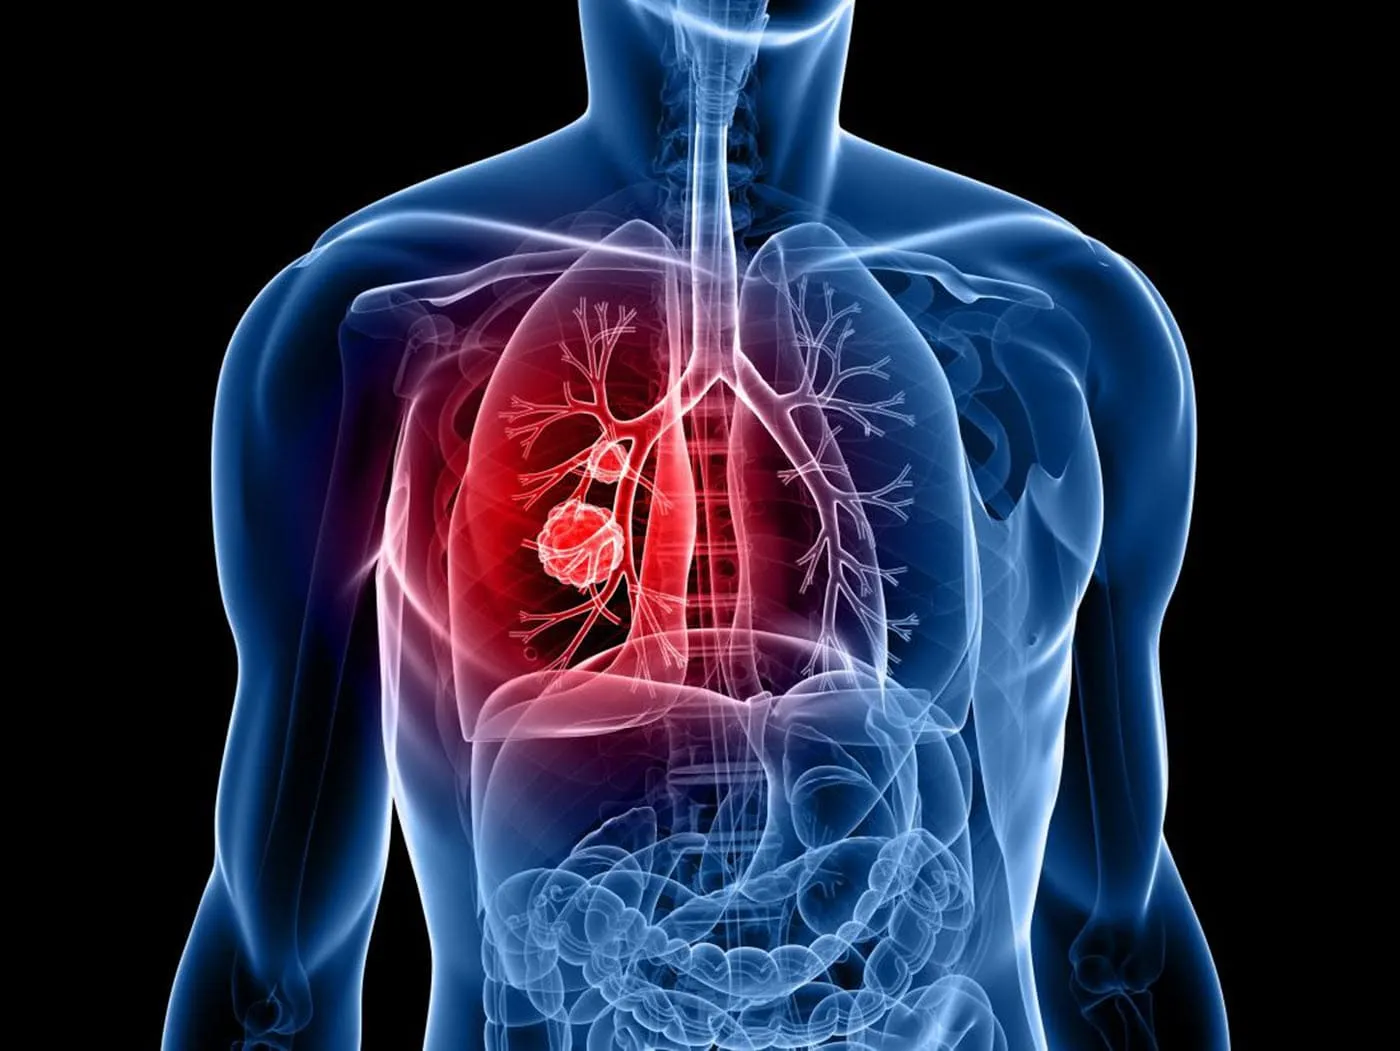 Ho khan kéo dài là một dấu hiệu của ung thư phổi